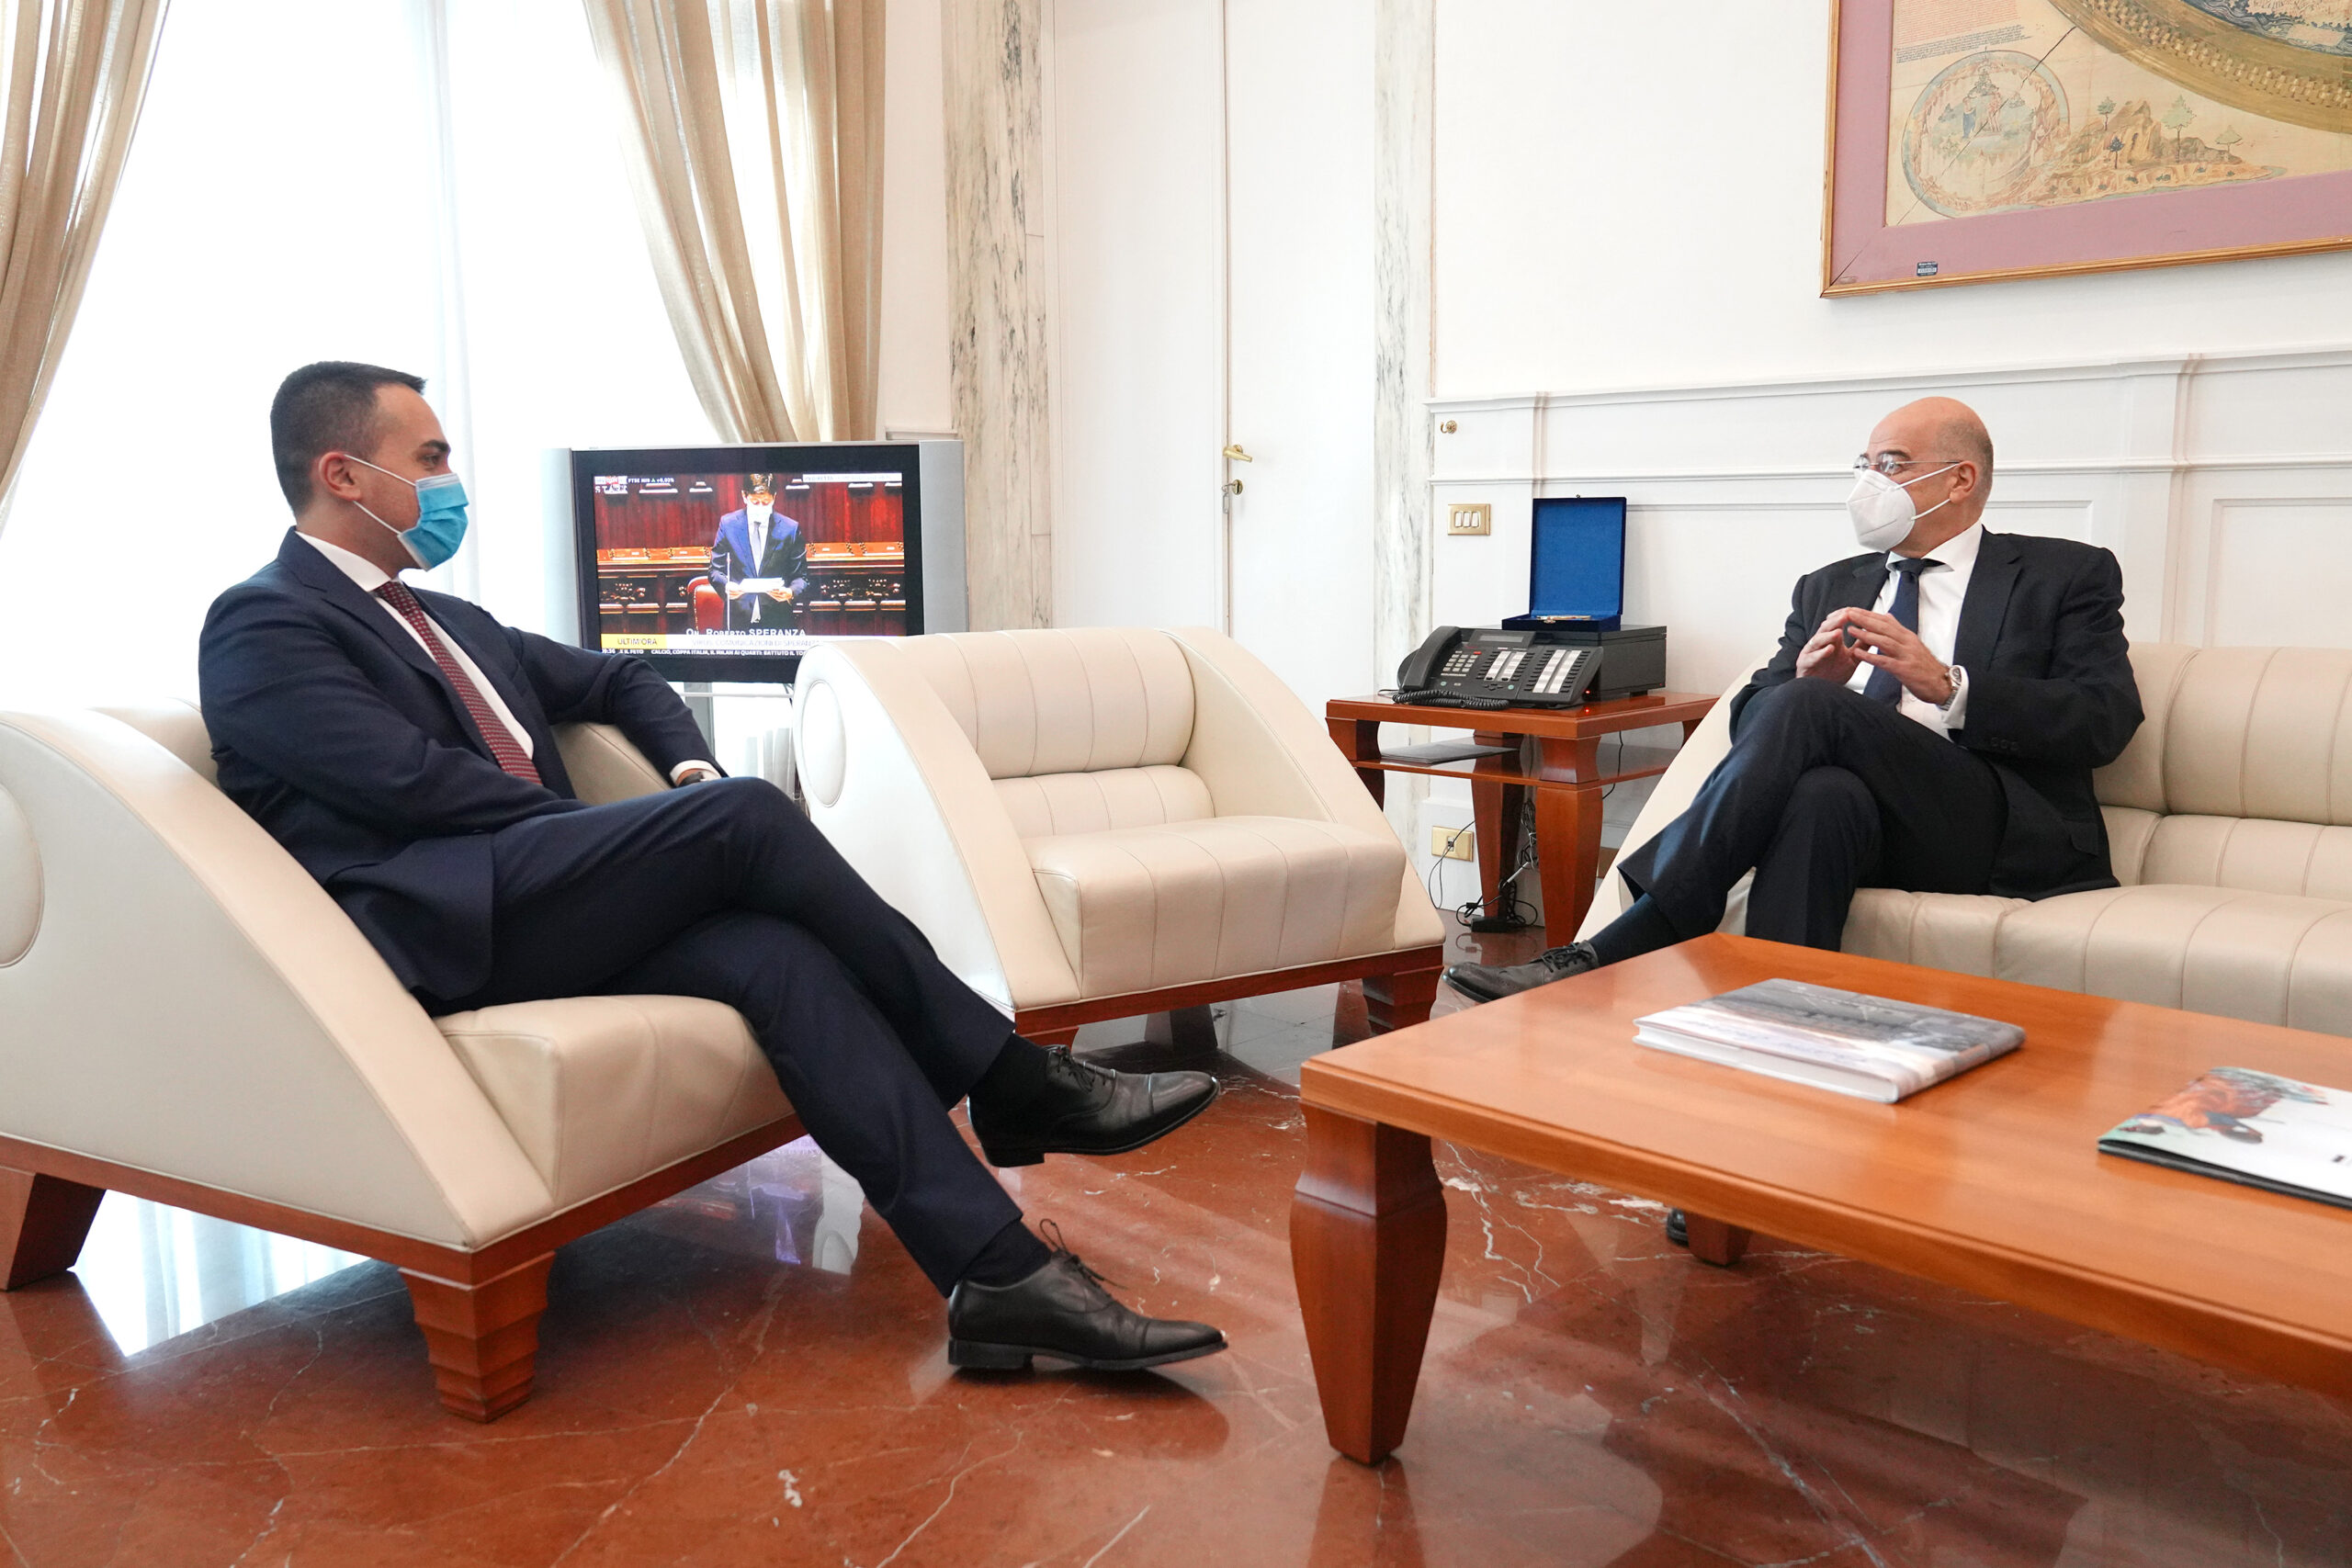 Επίσκεψη Υπουργού Εξωτερικών, Νίκου Δένδια, στην Ιταλία και στην Πορτογαλία. Στη Ρώμη ο κ. Δένδιας συνάντησε τον Ιταλό ομόλογό του, κ. Luigi Di Maio,  (Ρώμη,  13.01.2021)